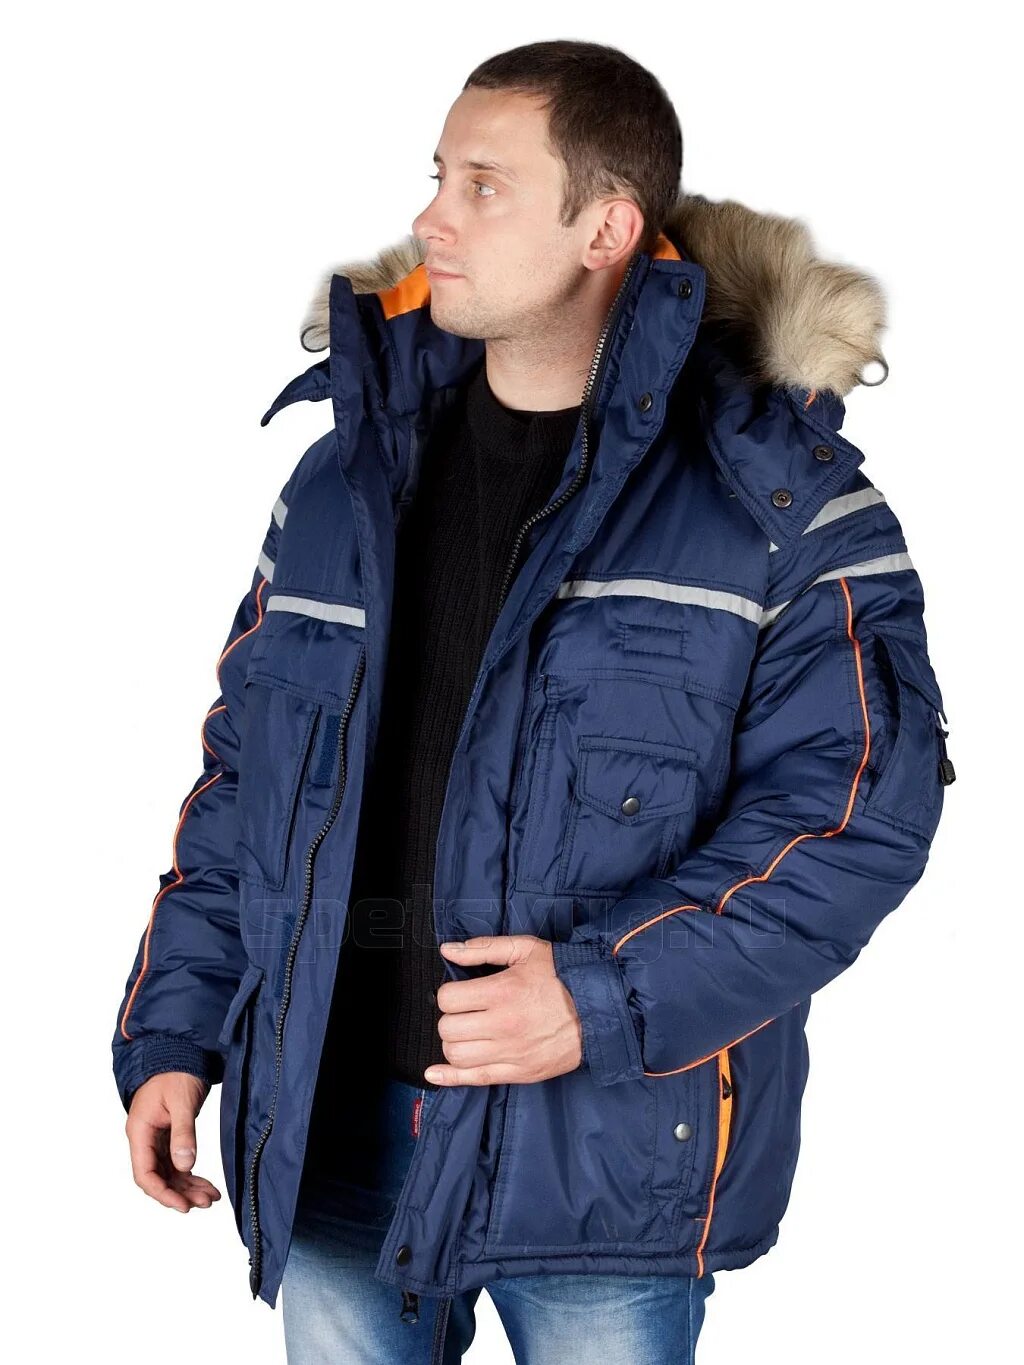 Куртка мужская зимняя Аляска Техноавиа. Модель 2.183 куртка Аляска. Куртка Техноавиа Аляска Люкс. Куртка Аляска Люкс. Спецодежда куртки зимние мужские